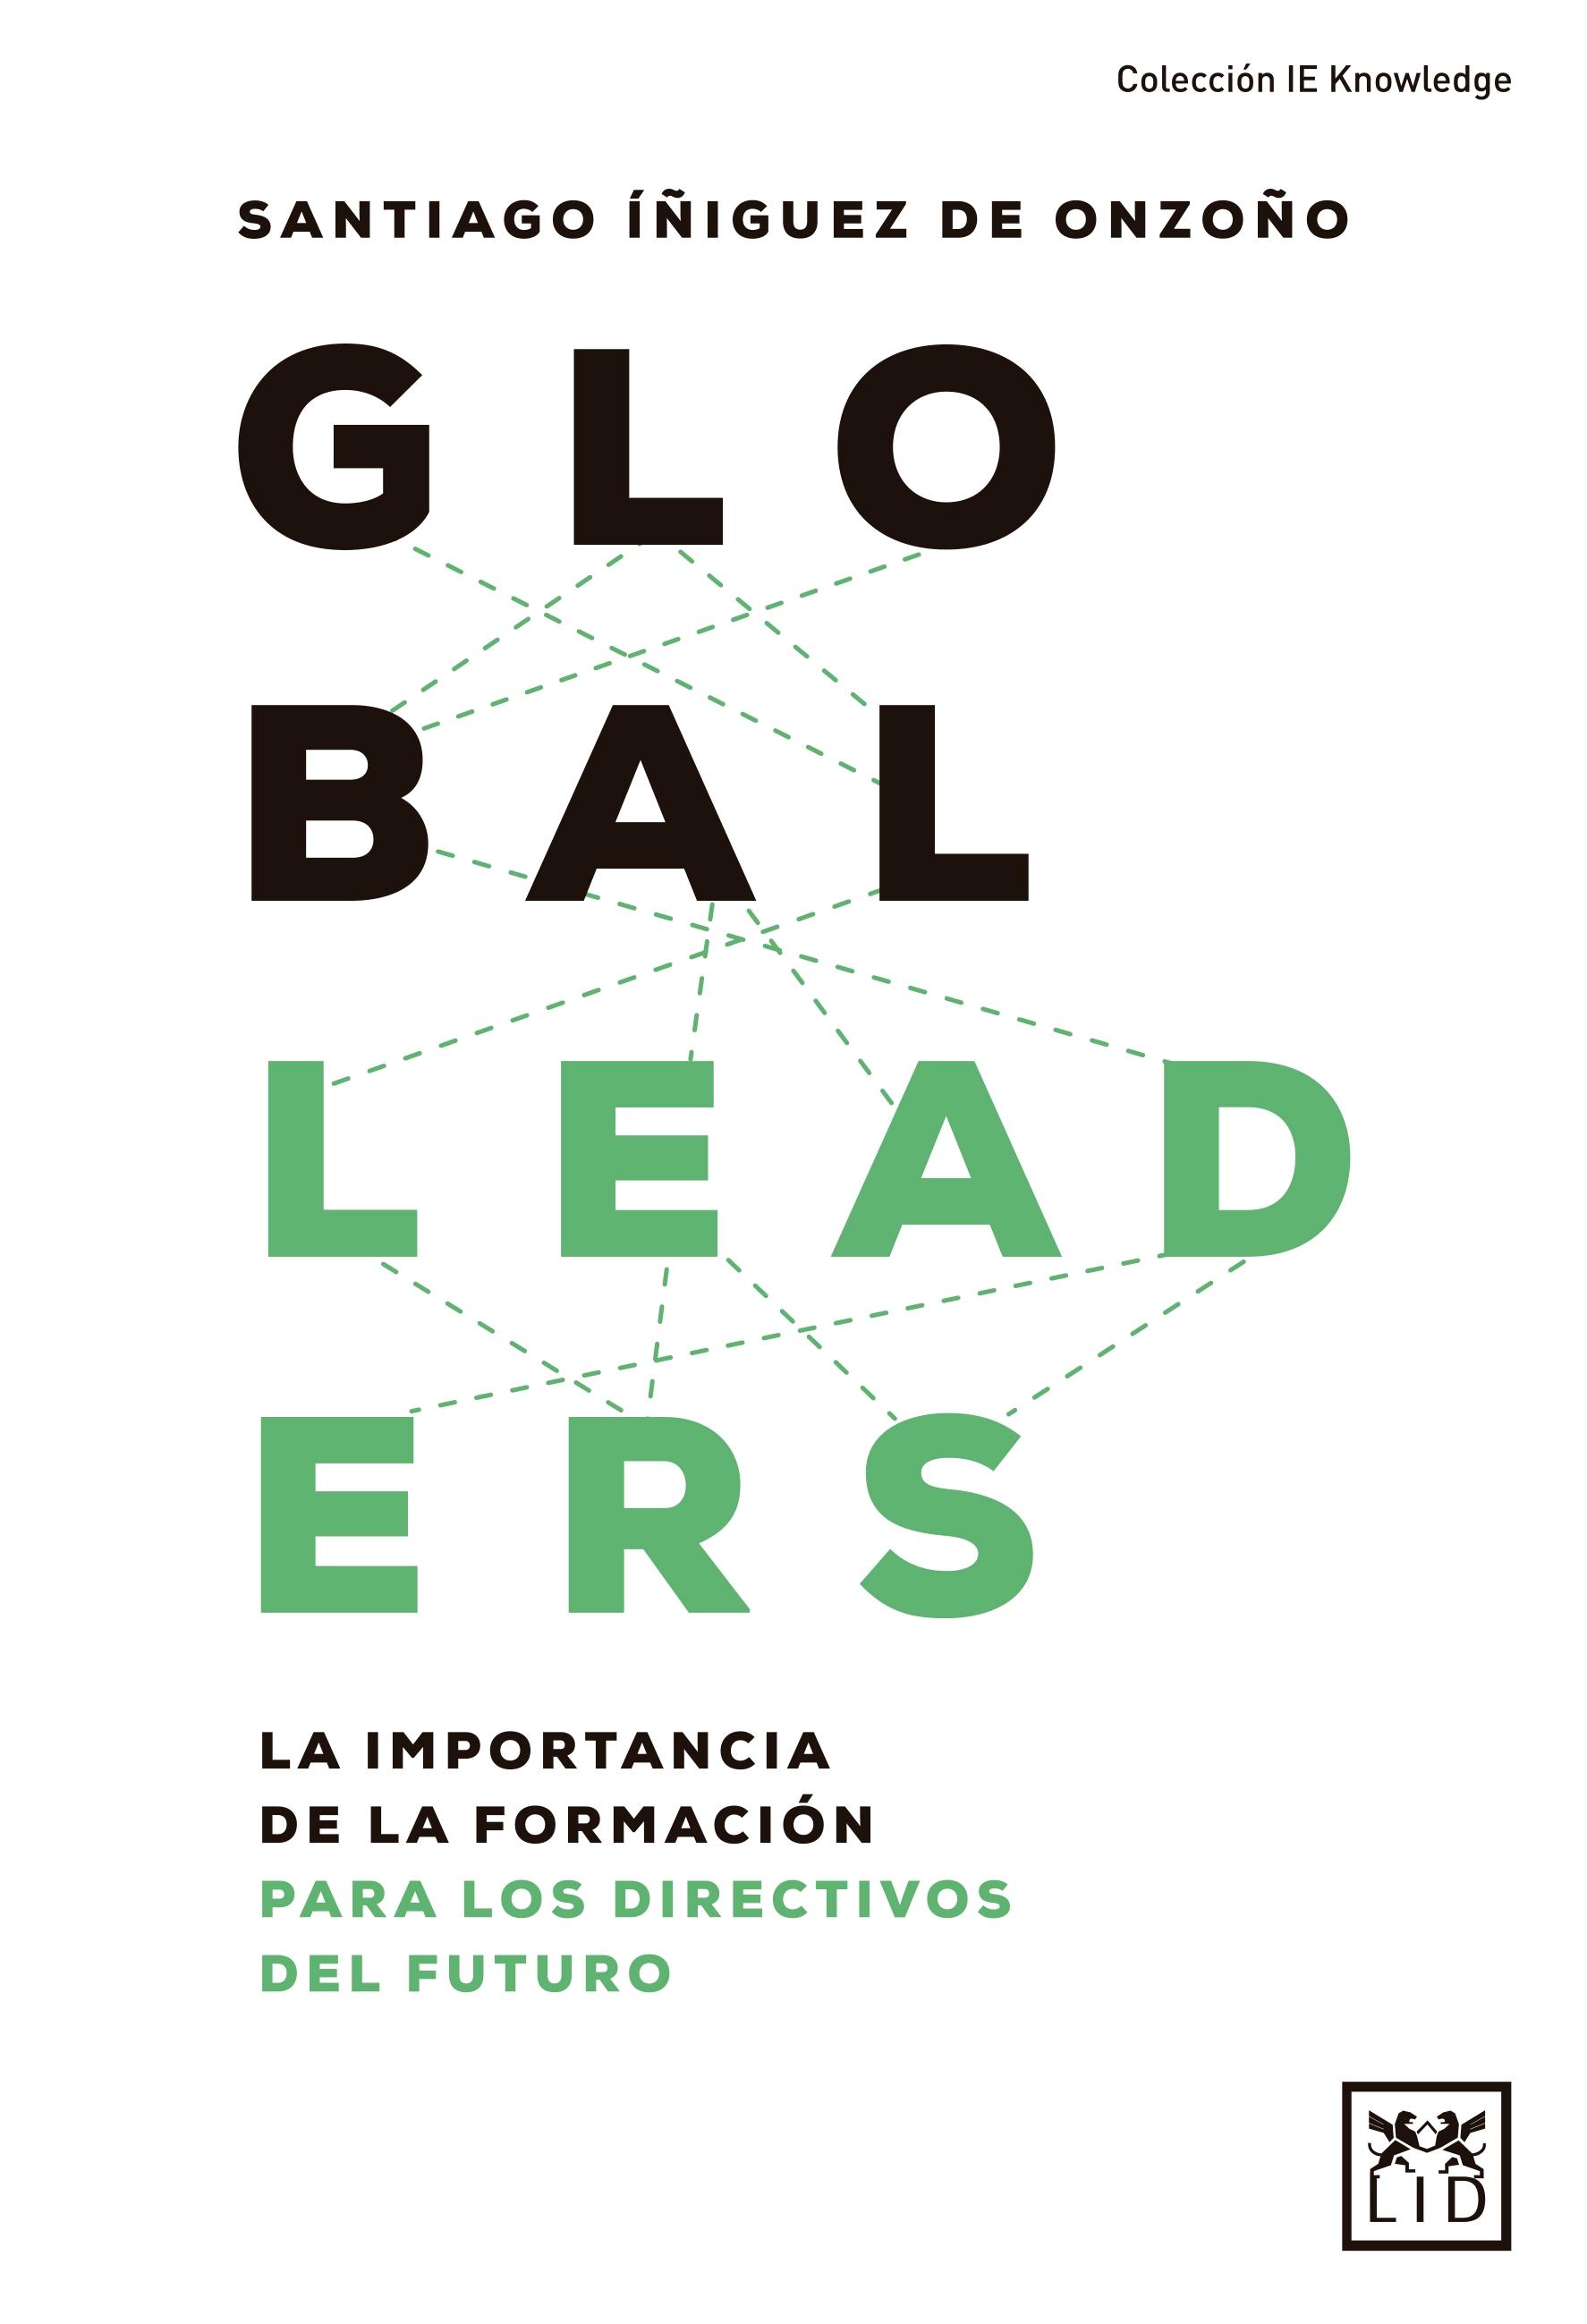 Global Leaders "La importancia de la fomación para los directivos del futuro"